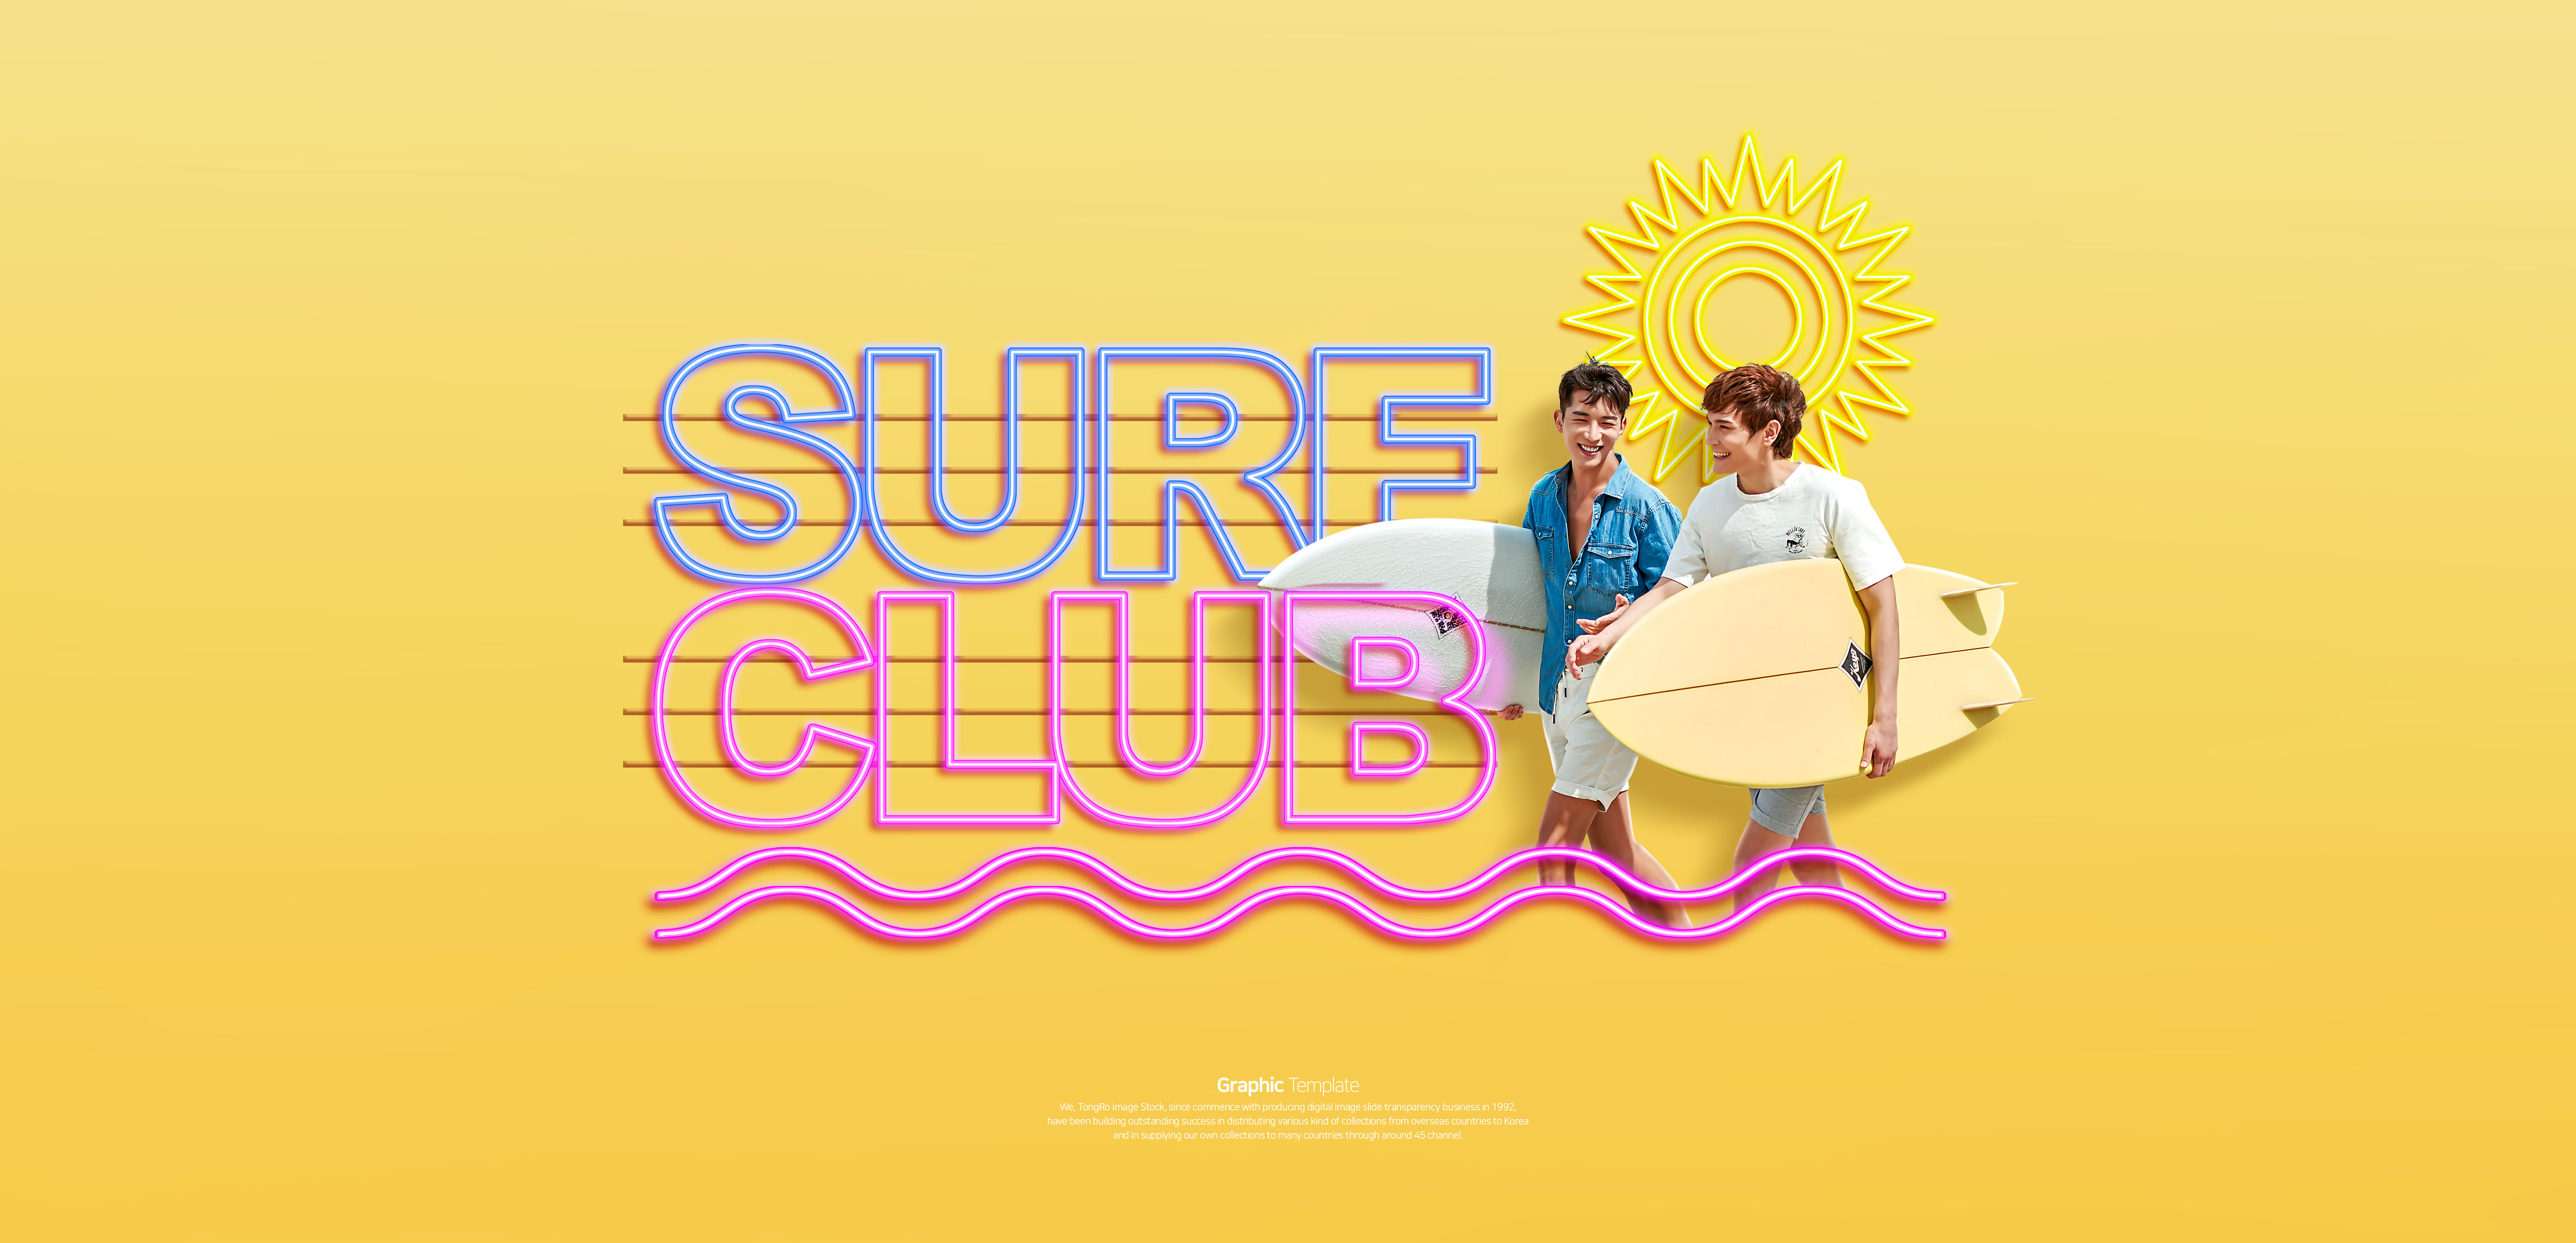 冲浪俱乐部活动宣传Banner蚂蚁素材精选广告模板插图